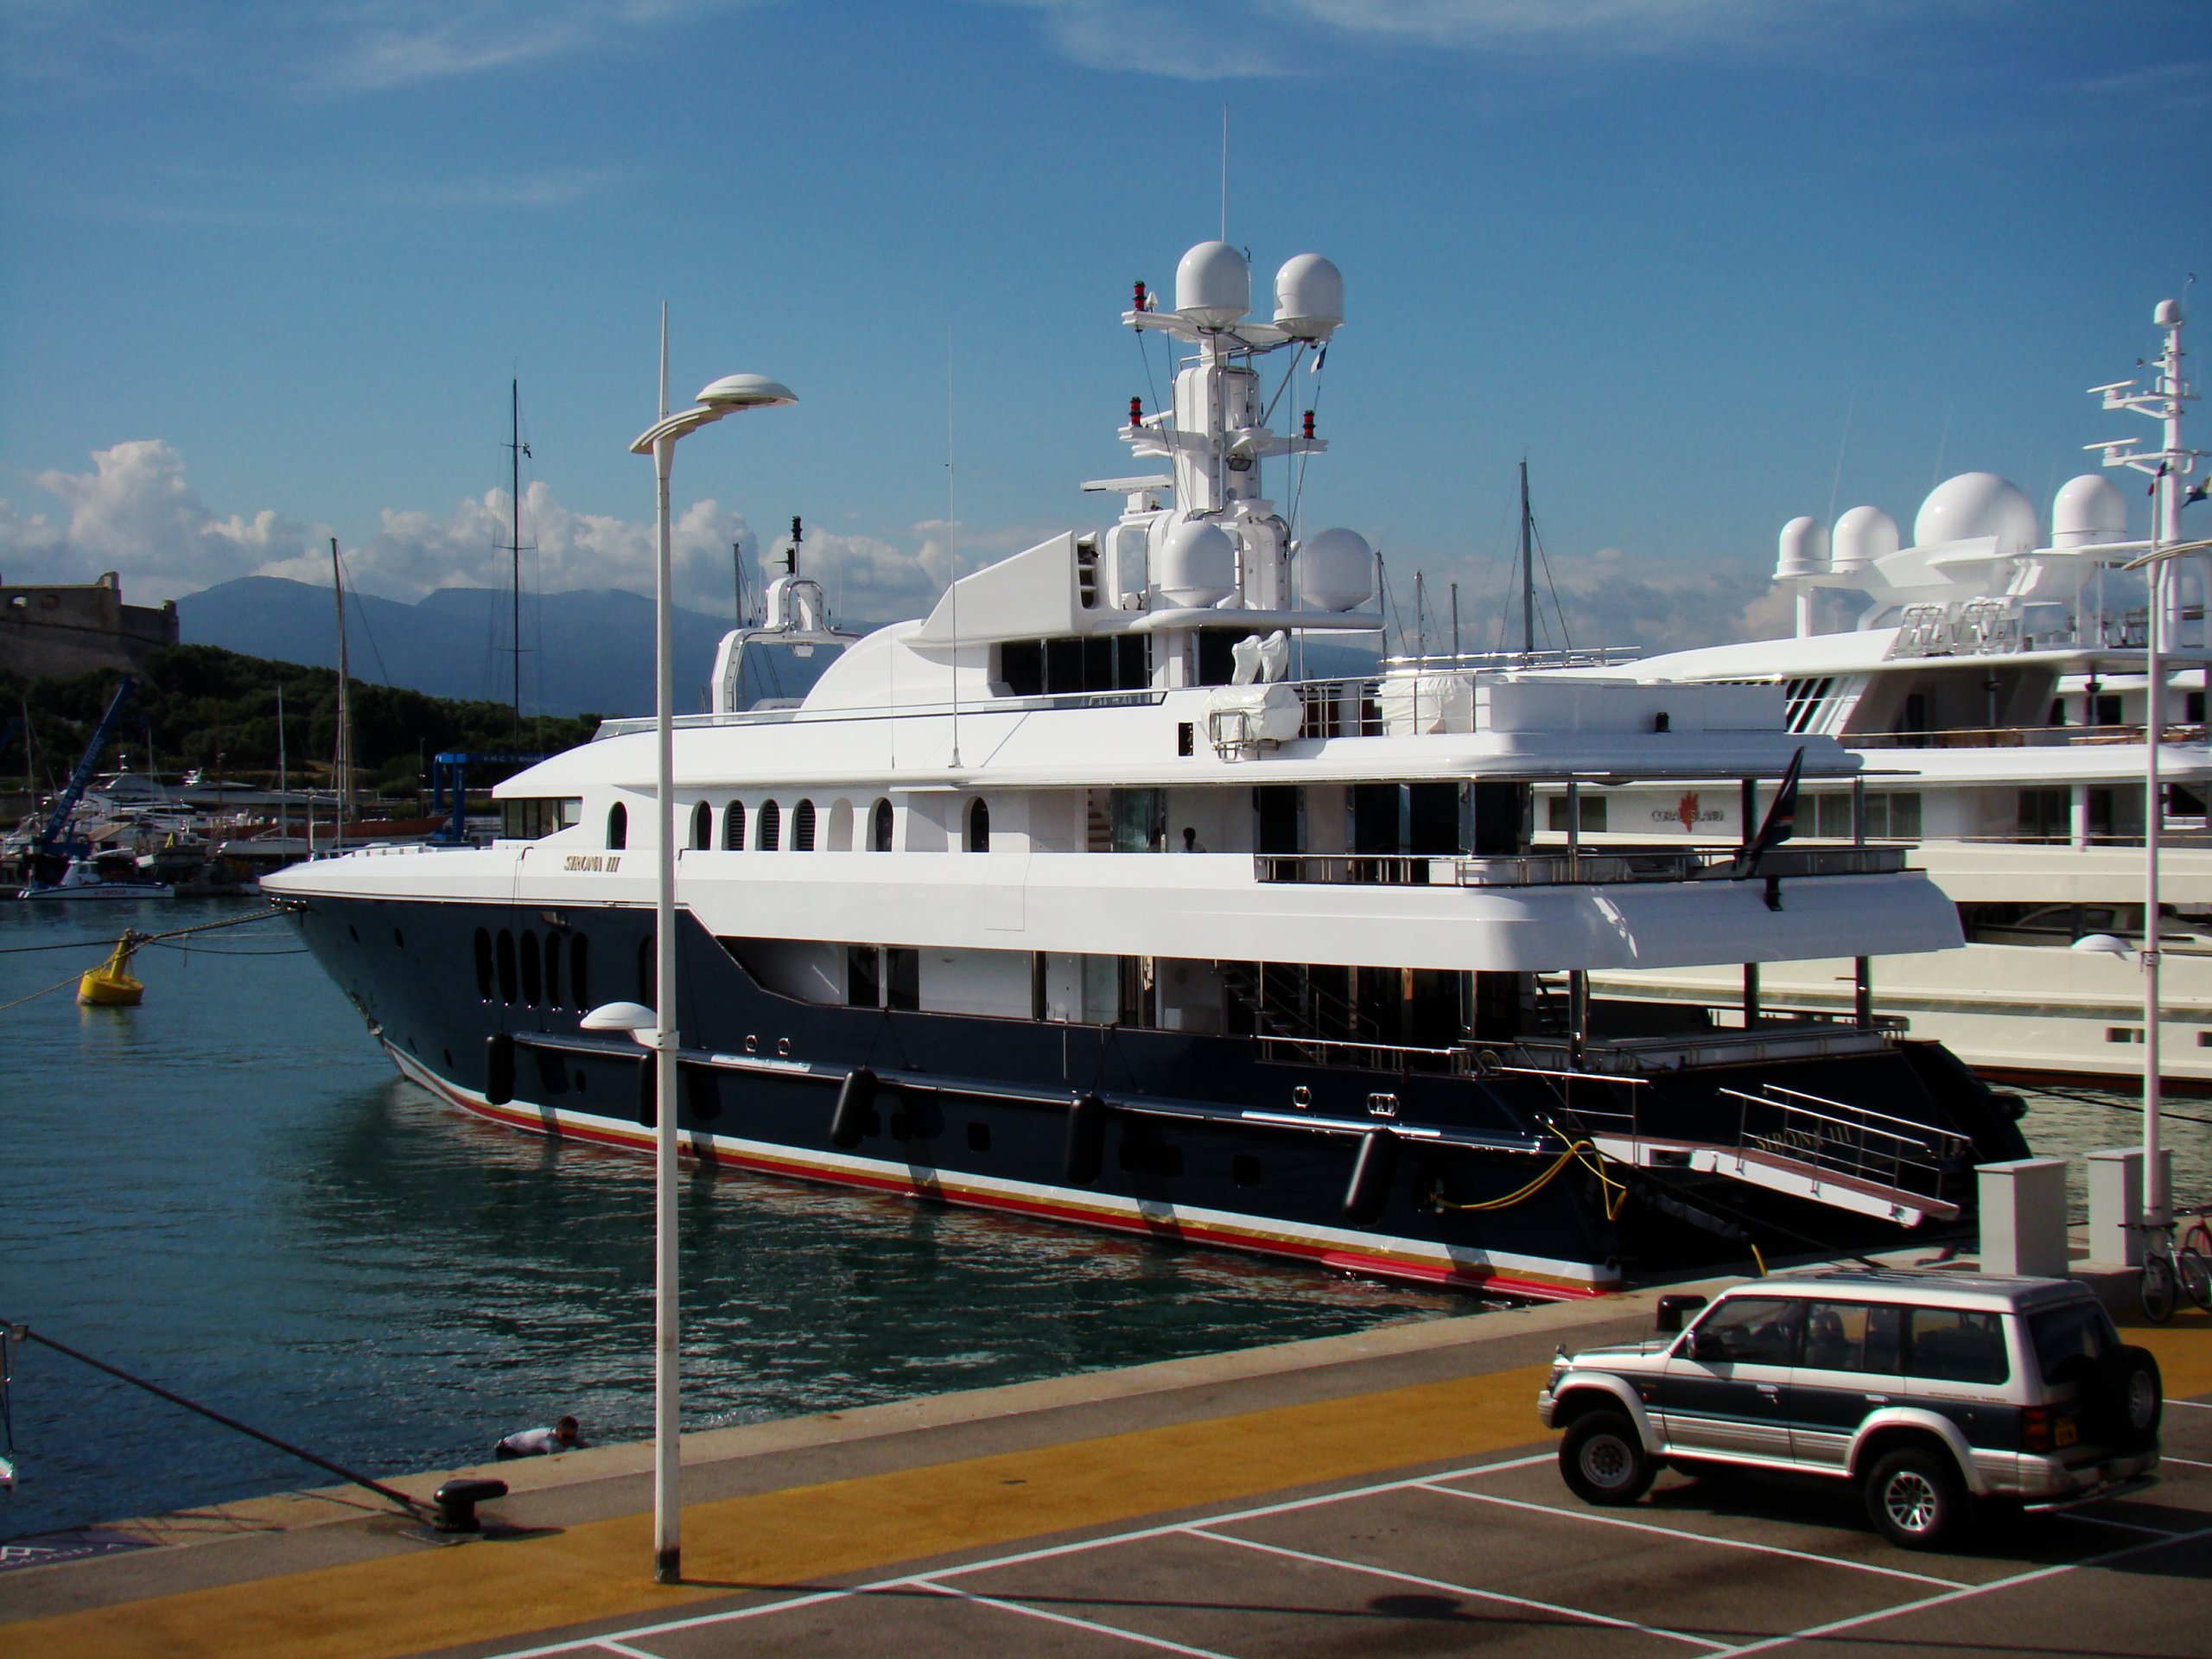 4 ROSES Yacht • Oceanfast • 2004 • Ex Propriétaire Micky Arison - Sirona III